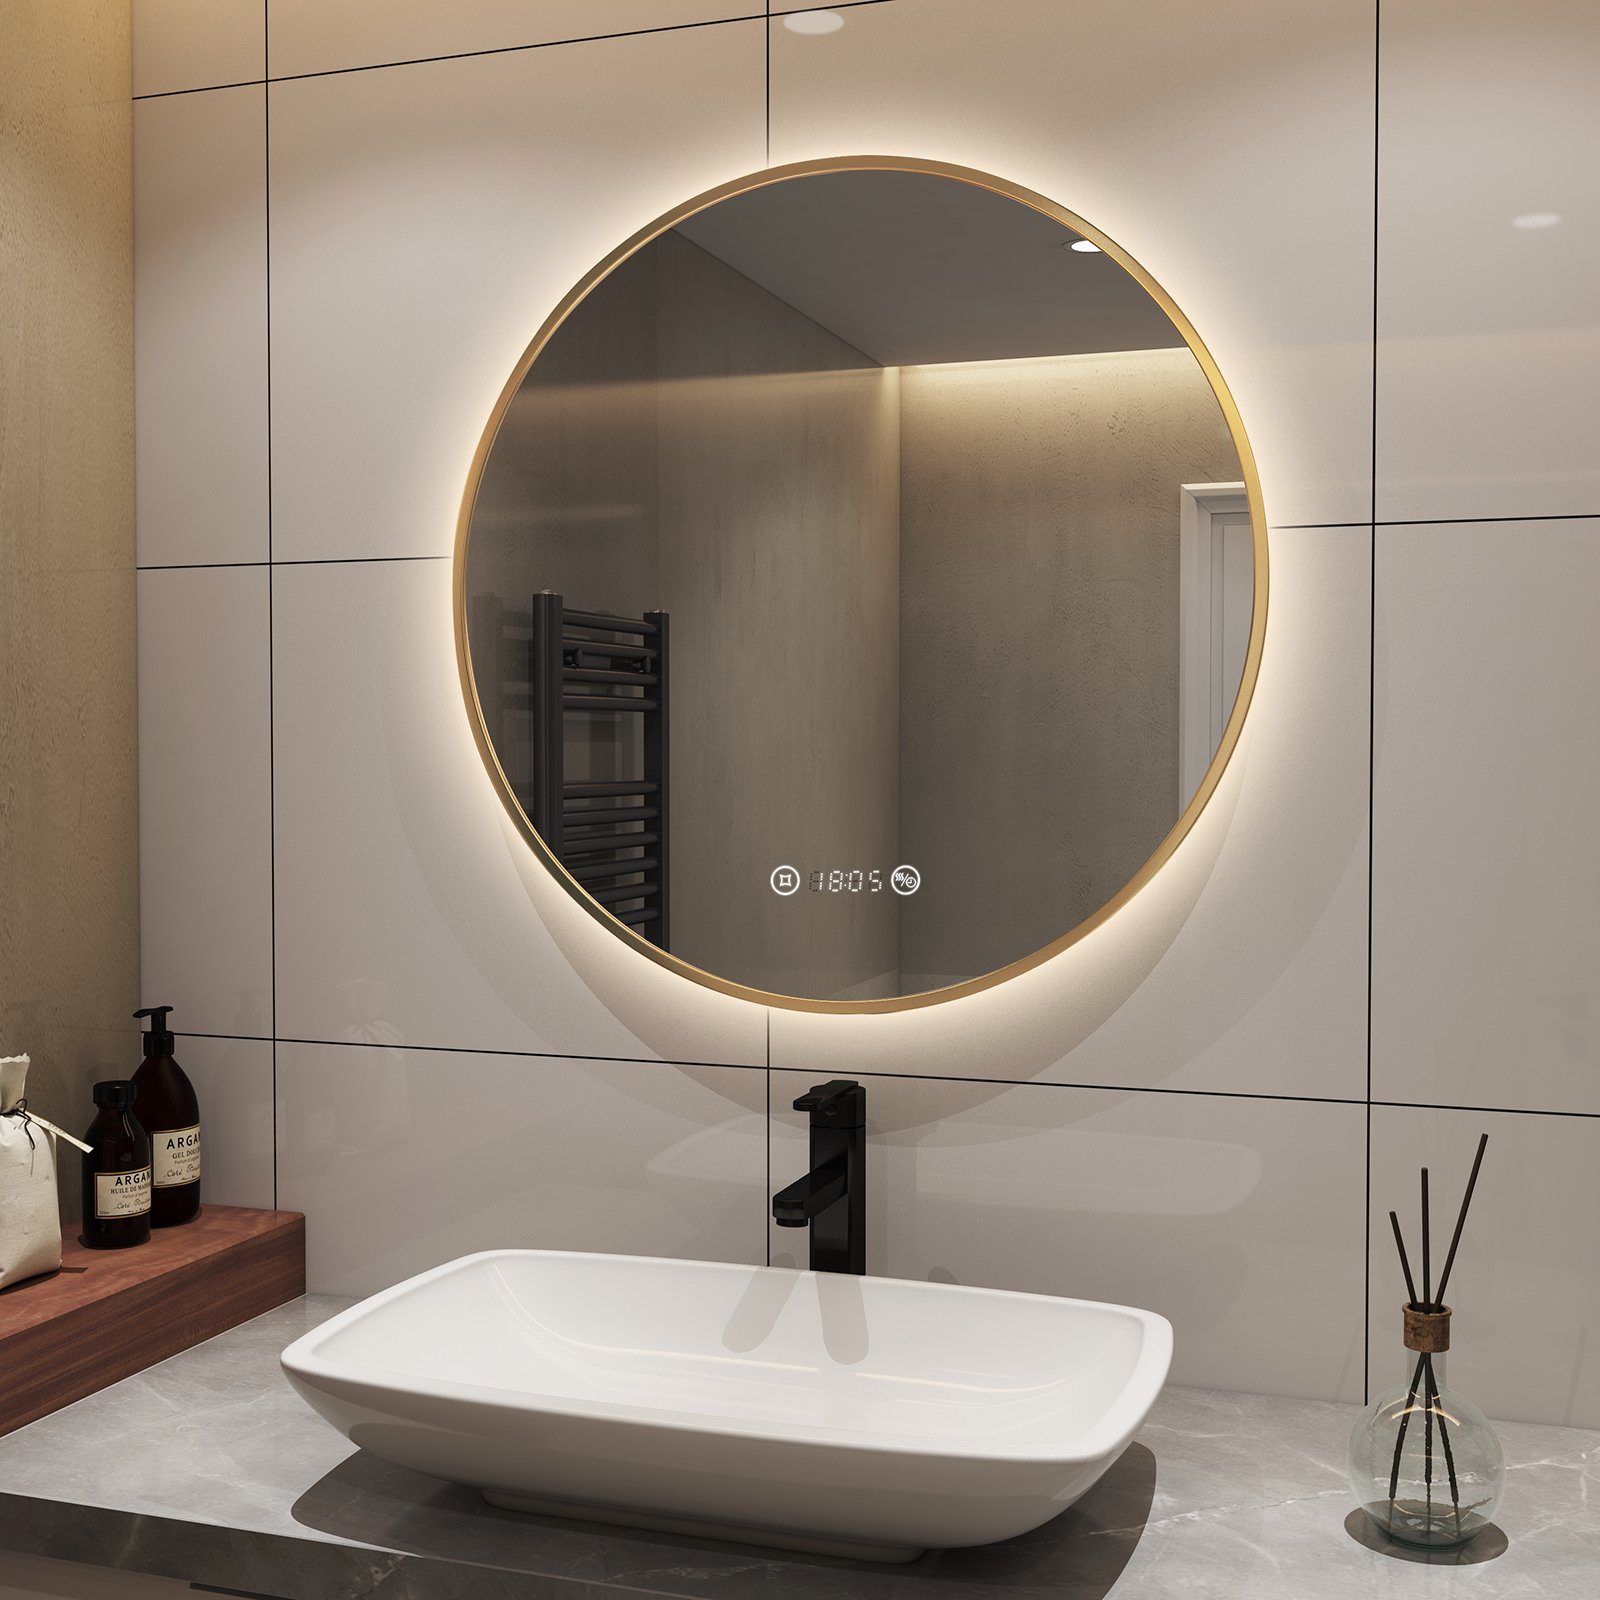 S'AFIELINA Badspiegel Runder LED Badezimmerspiegel Energiesparender Wandspiegel, TouchSchalter,Beschlagfrei,Neutralweiß 4300K,Helligkeit Einstellbar Goldener